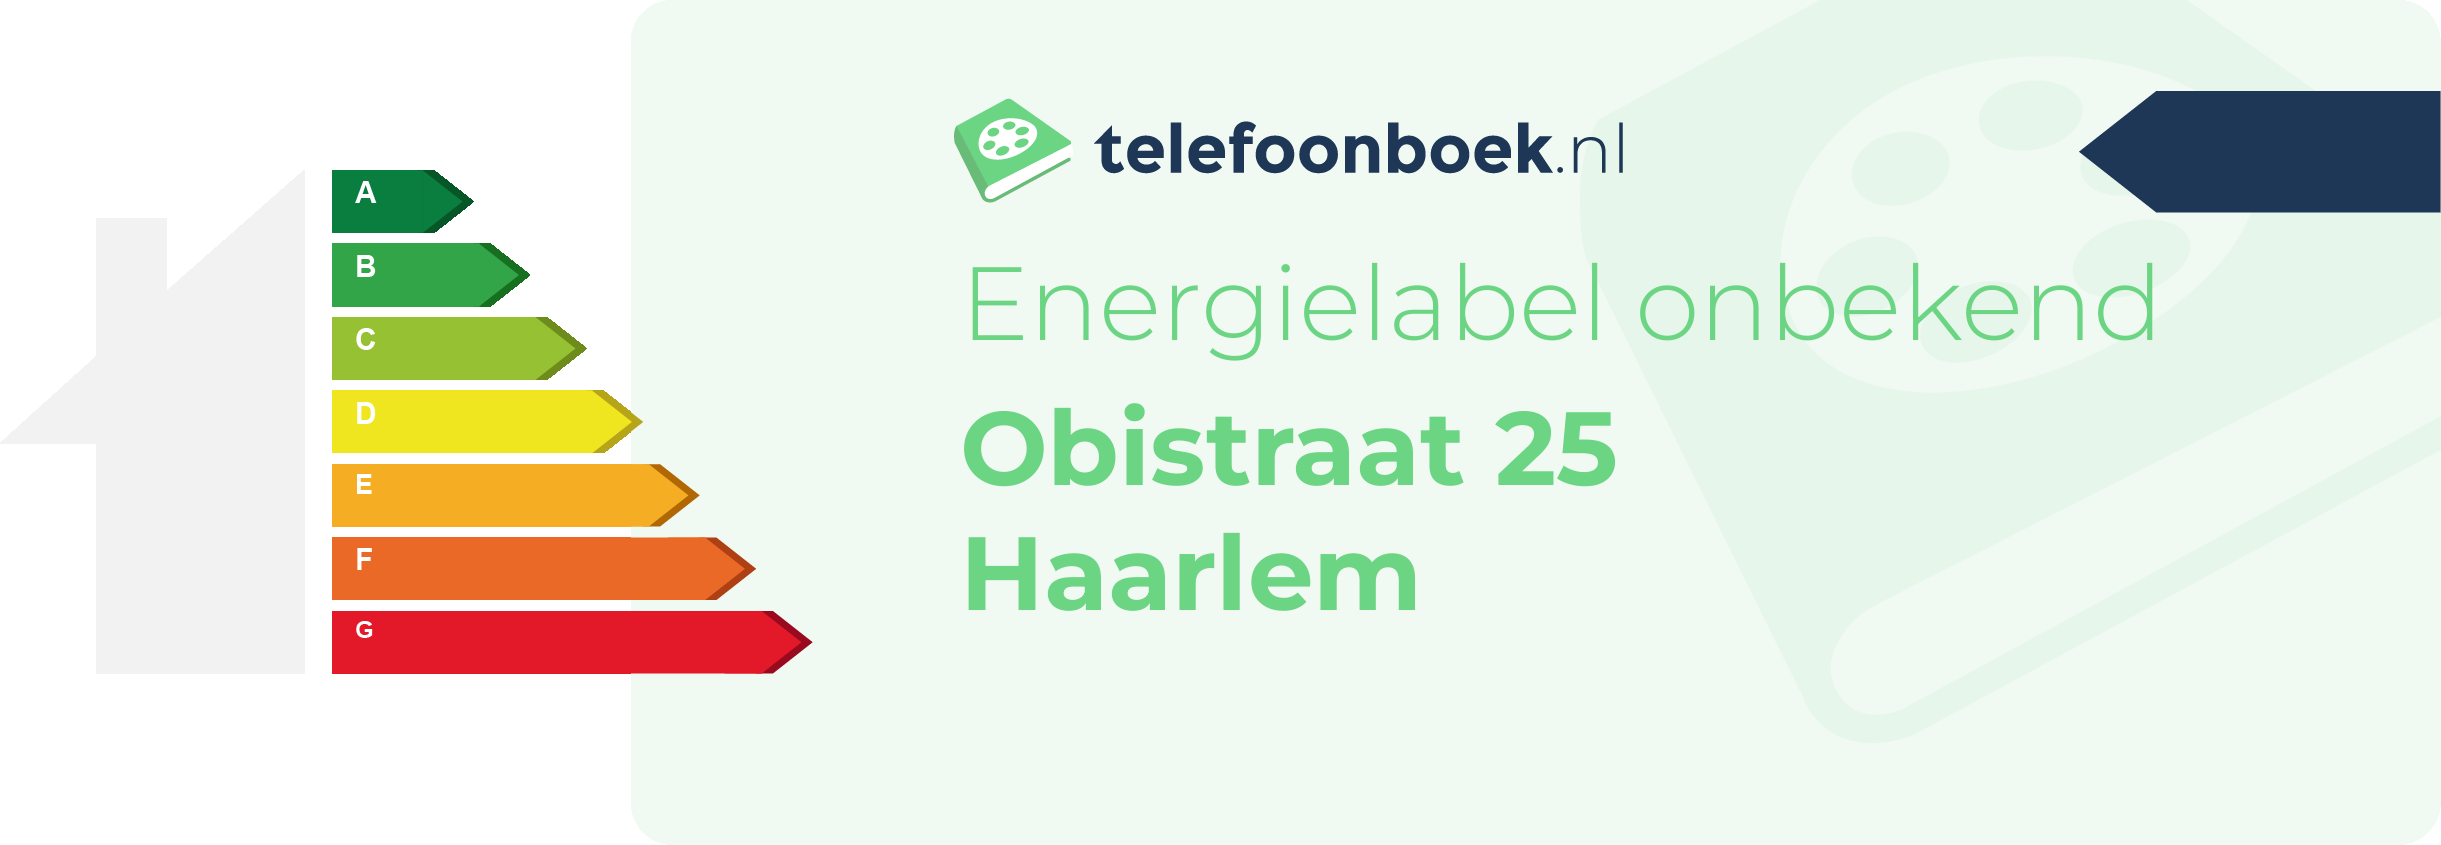 Energielabel Obistraat 25 Haarlem